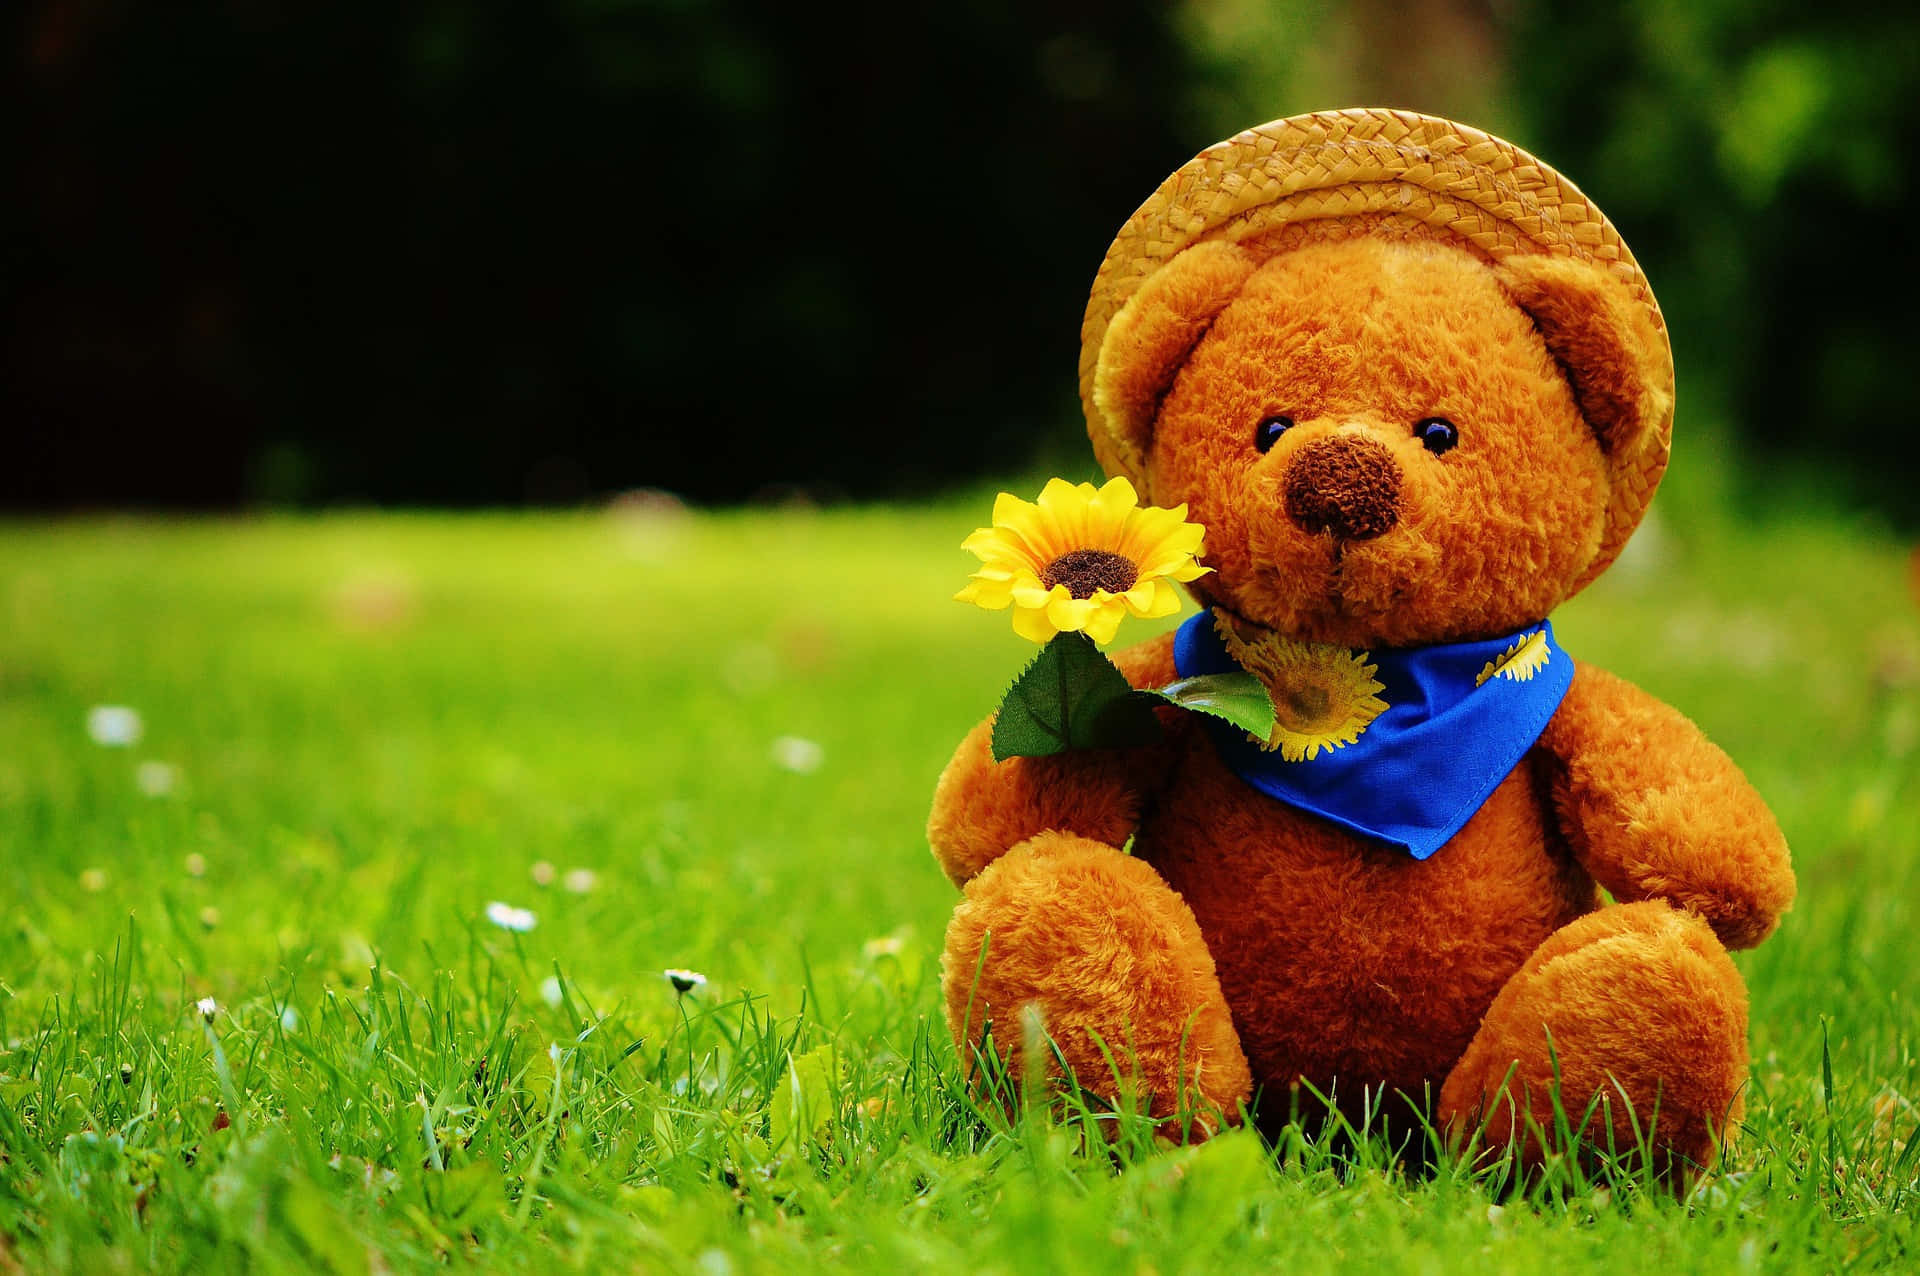 A Brown Teddy Bear Sitting On Grass